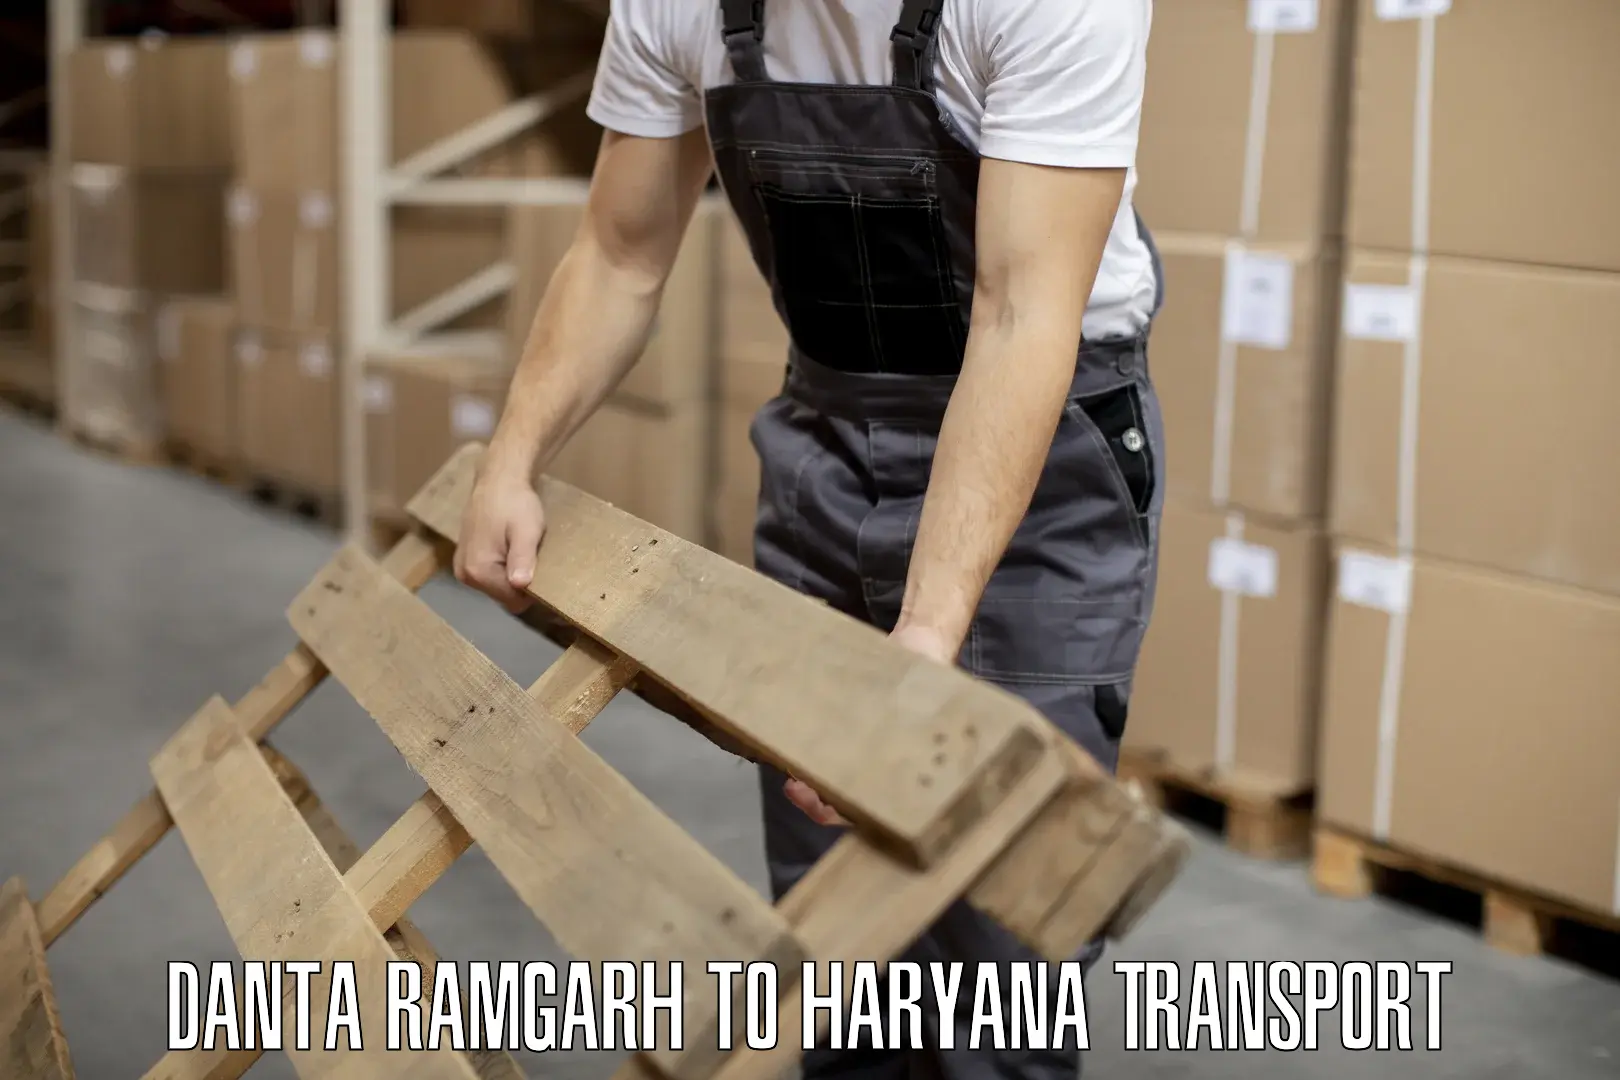 Shipping partner Danta Ramgarh to Charkhi Dadri